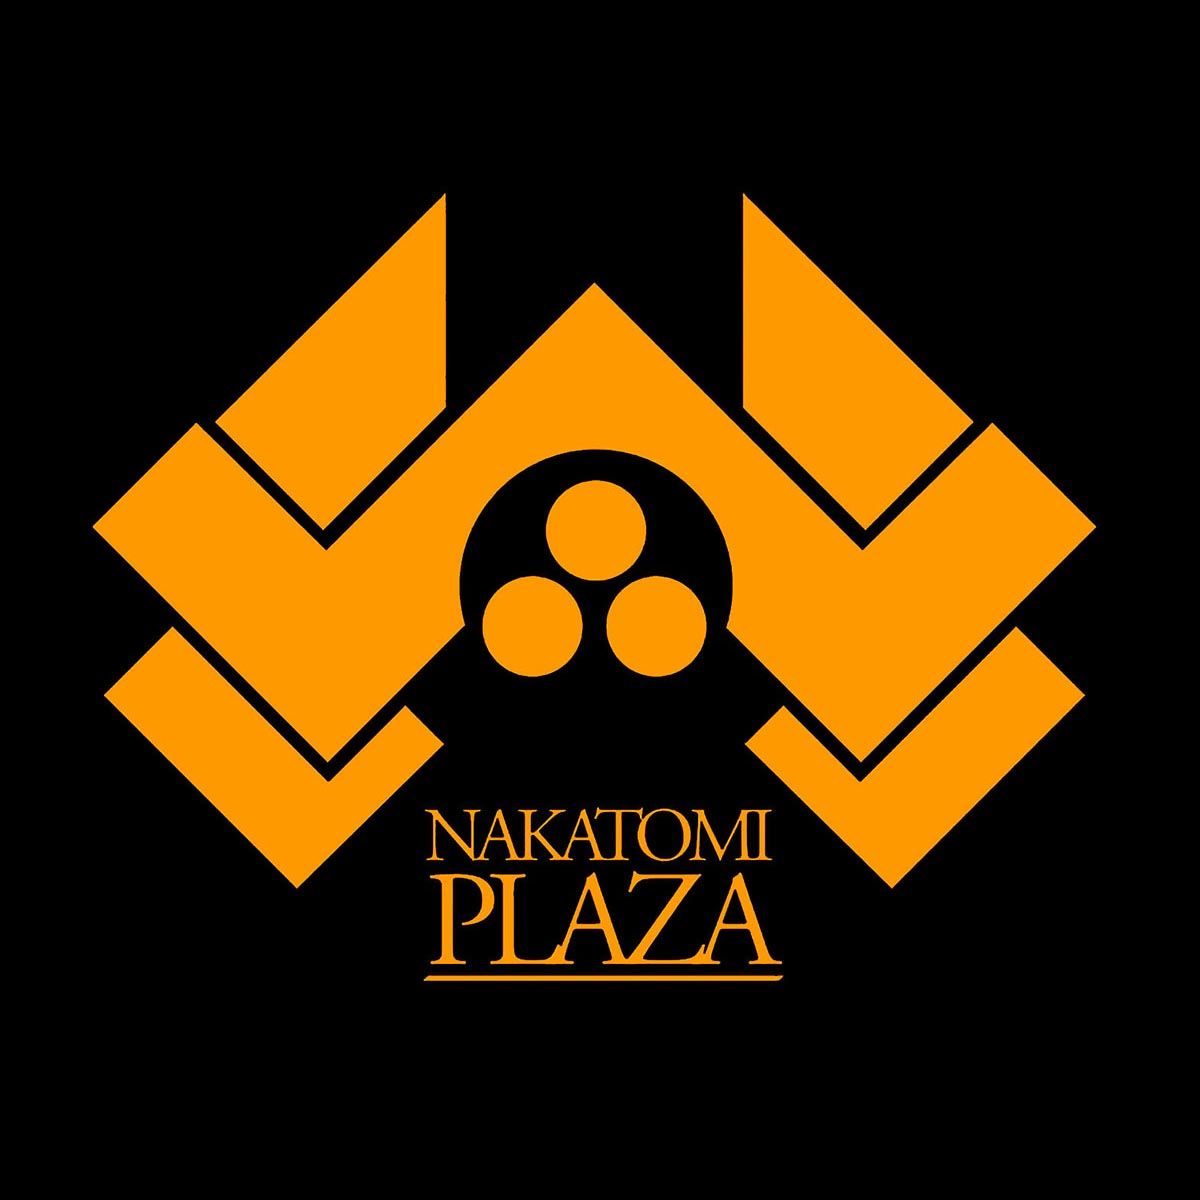 Nome do produto: Nakatomi Plaza